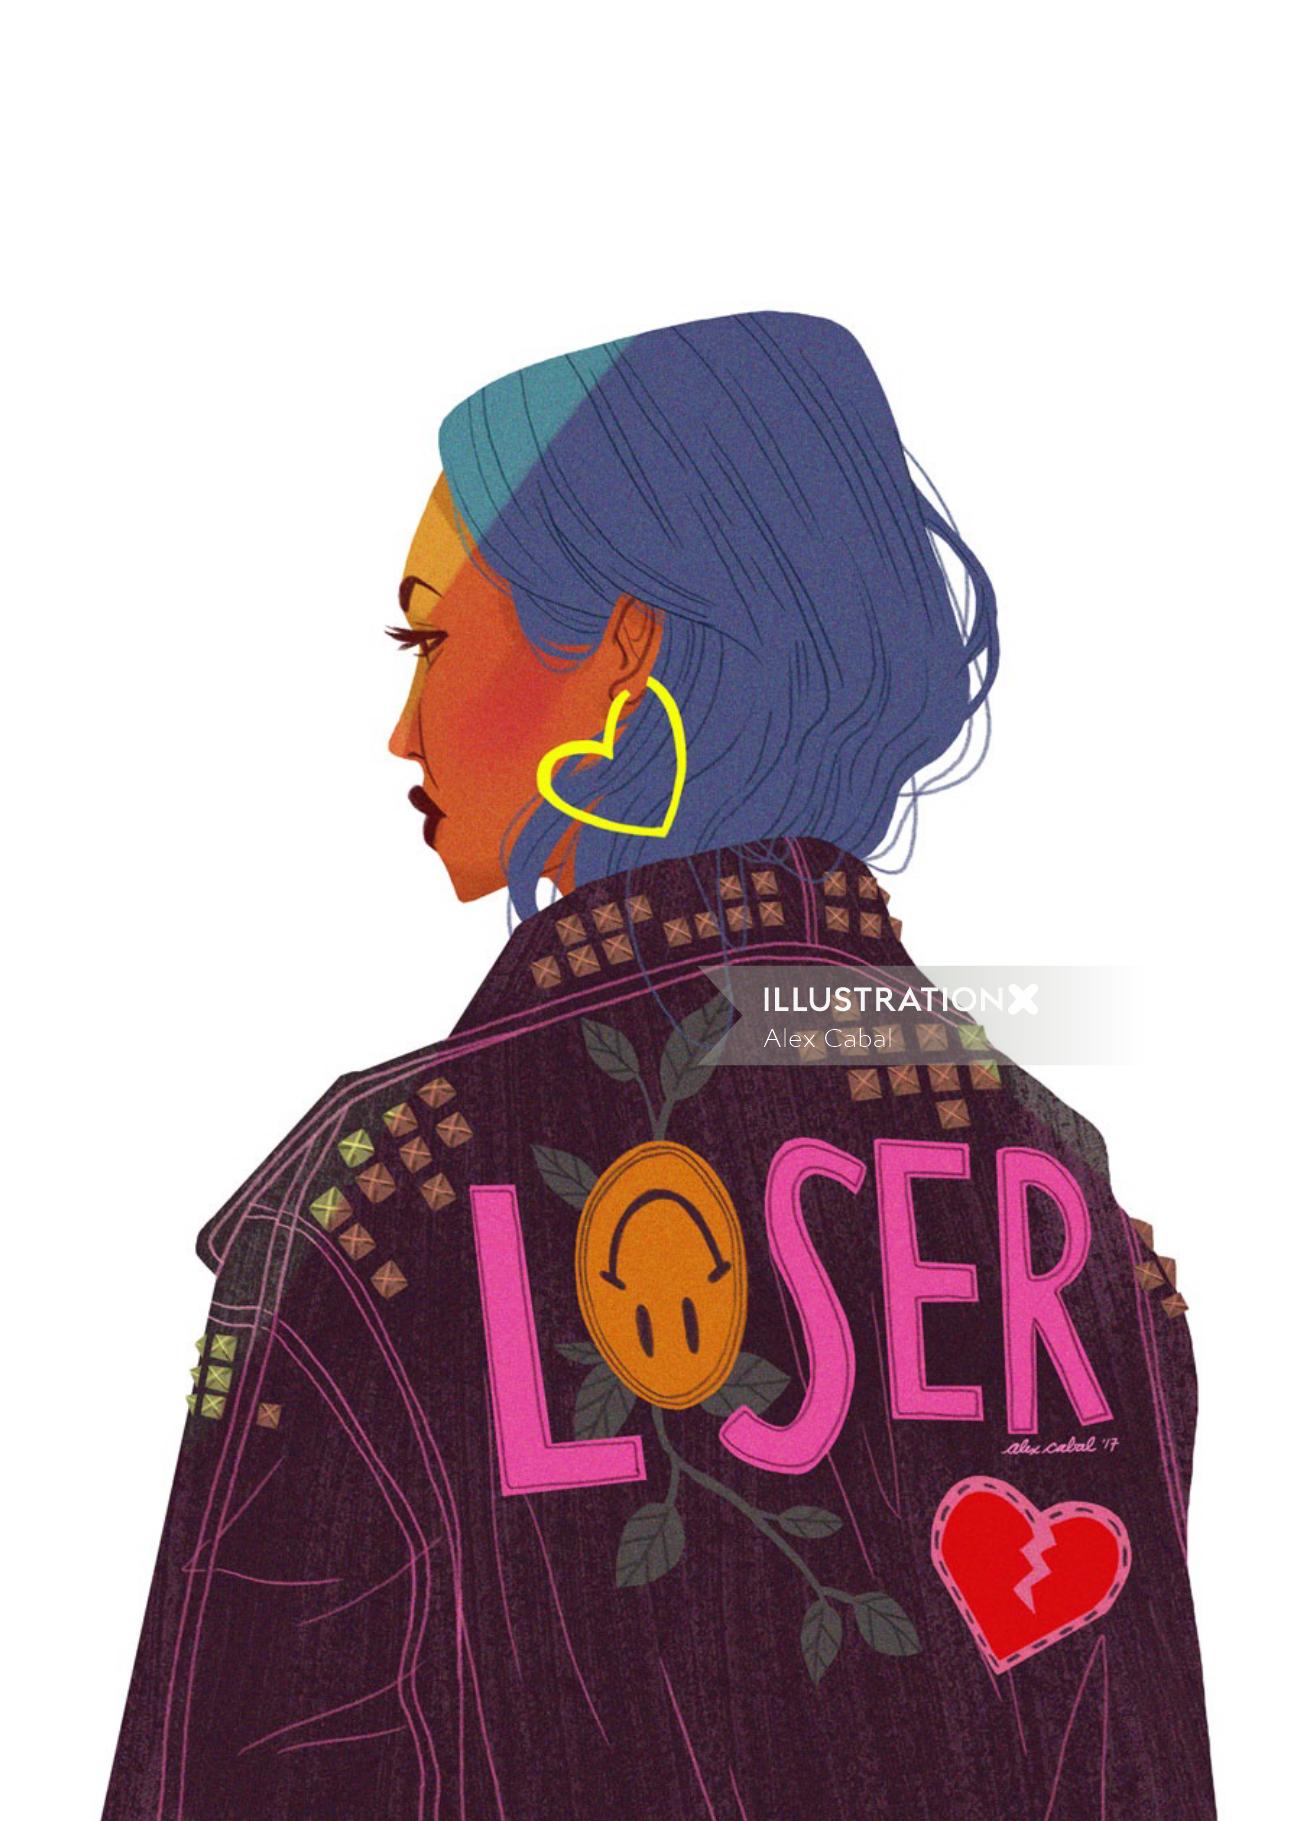 illustration of Girl wearing Loser Jacket